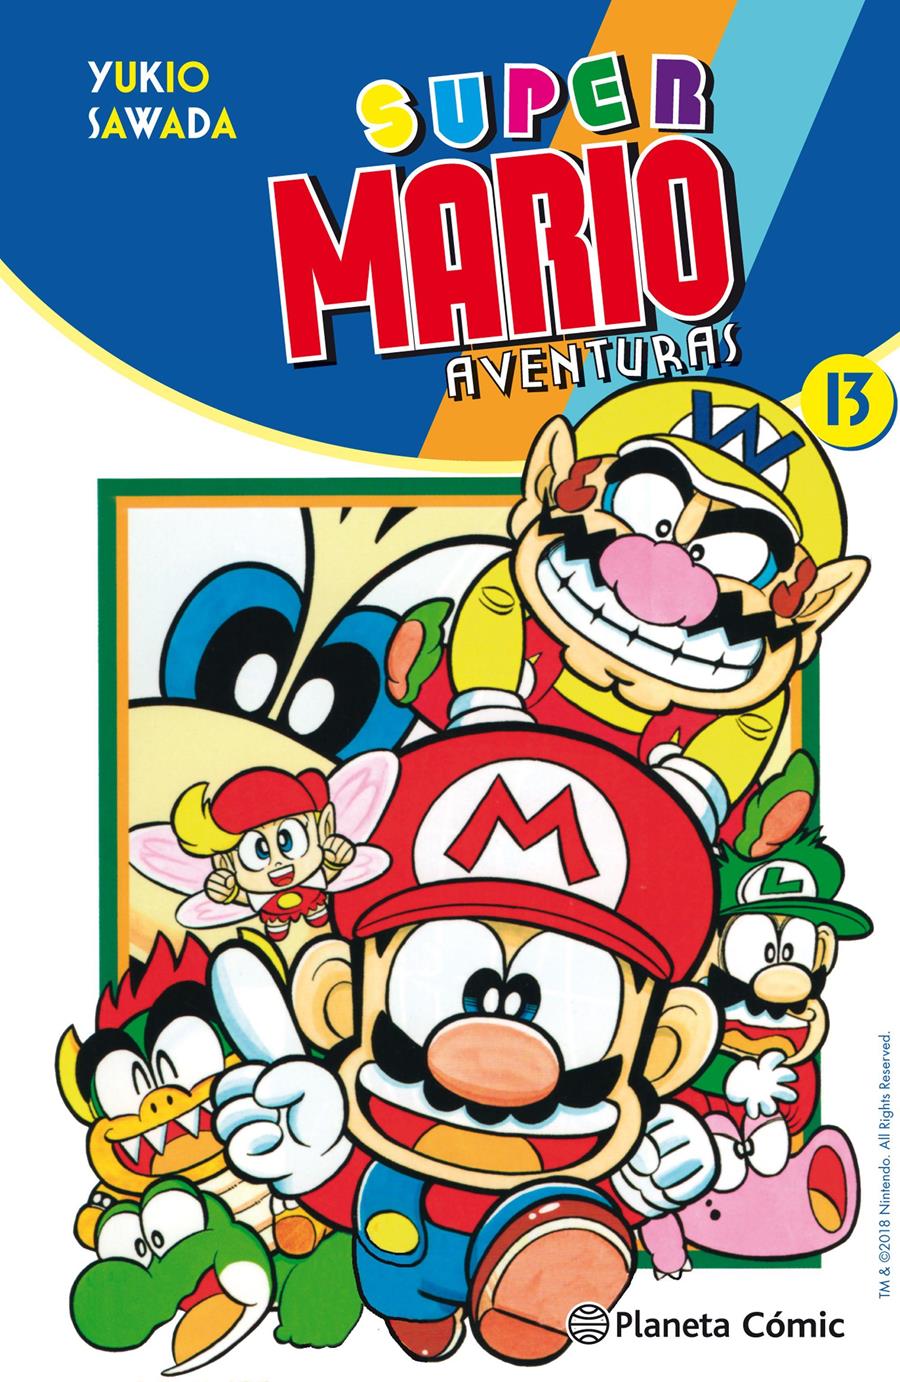 Super Mario nº 13 | N0718-PLA20 | Yukio Sawada | Terra de Còmic - Tu tienda de cómics online especializada en cómics, manga y merchandising